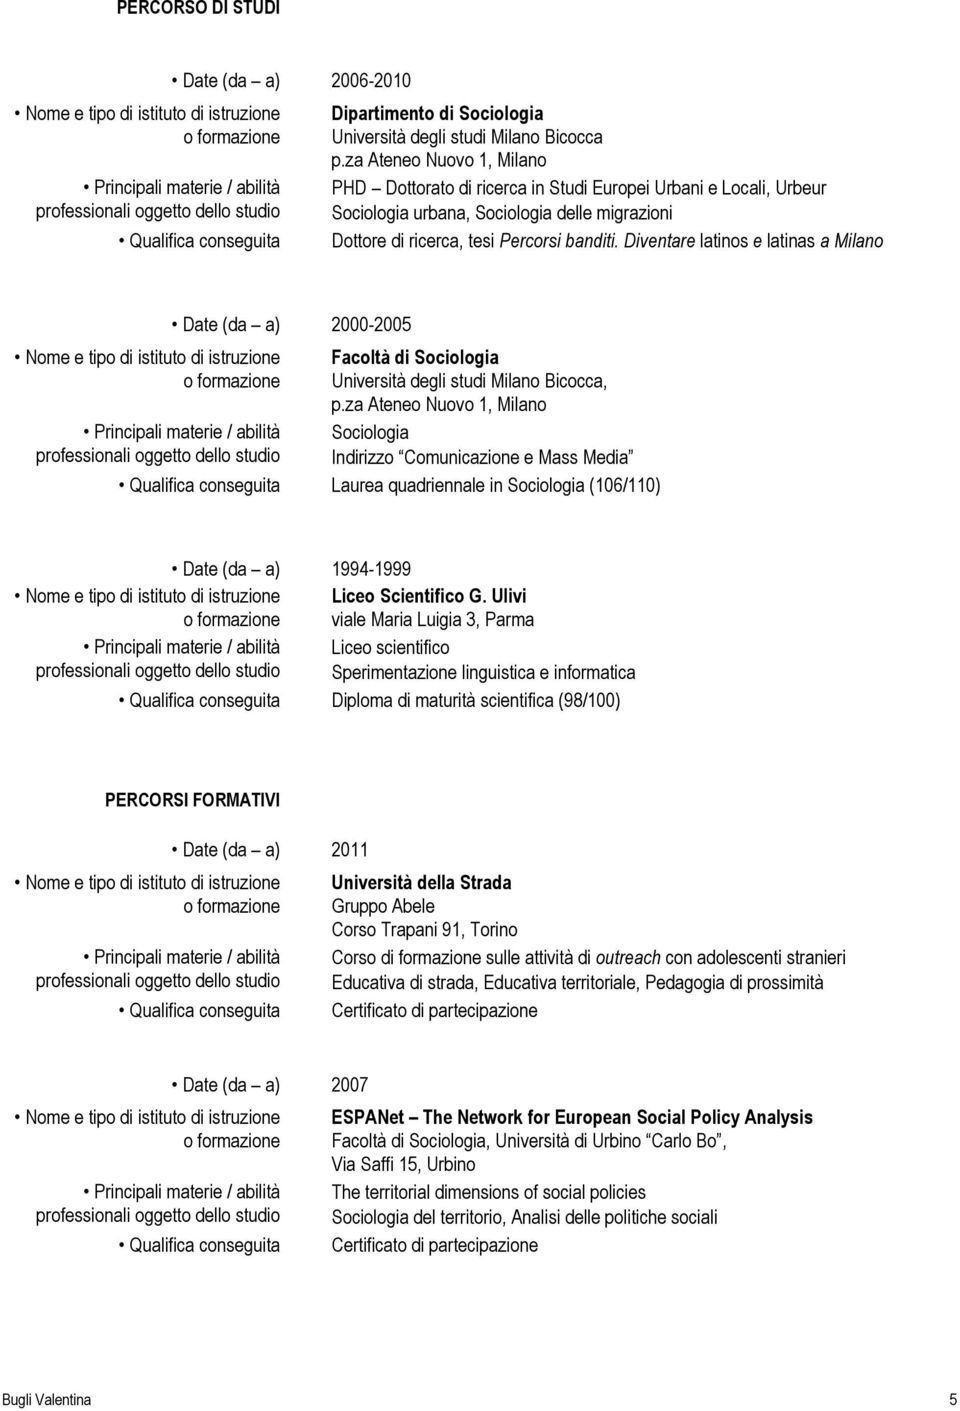 Diventare latinos e latinas a Milano Date (da a) 2000-2005 Facoltà di Sociologia Università degli studi Milano Bicocca, p.